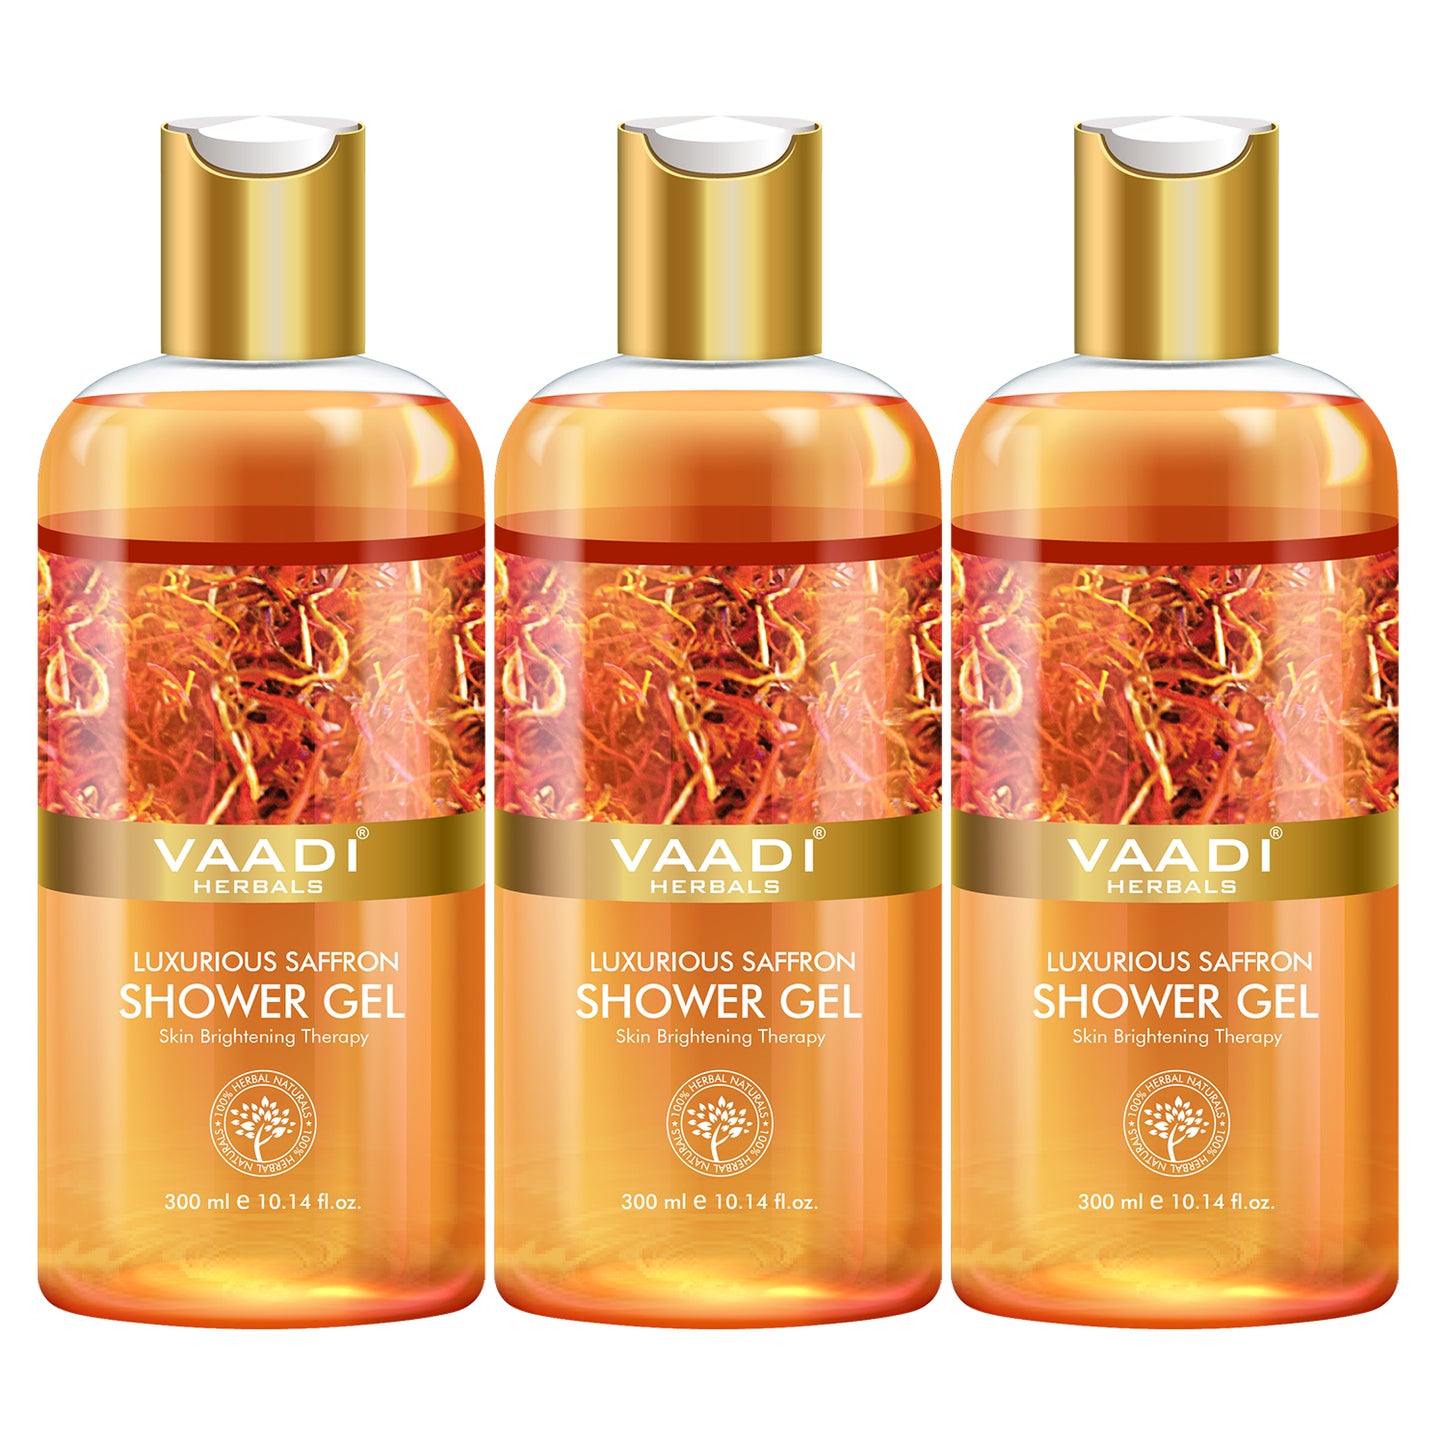 Luxurious Organic Saffron Shower Gel - Skin Lightening Therapy - Reduces Pigmentation Marks (3 x 300 ml / 10.2 fl oz)